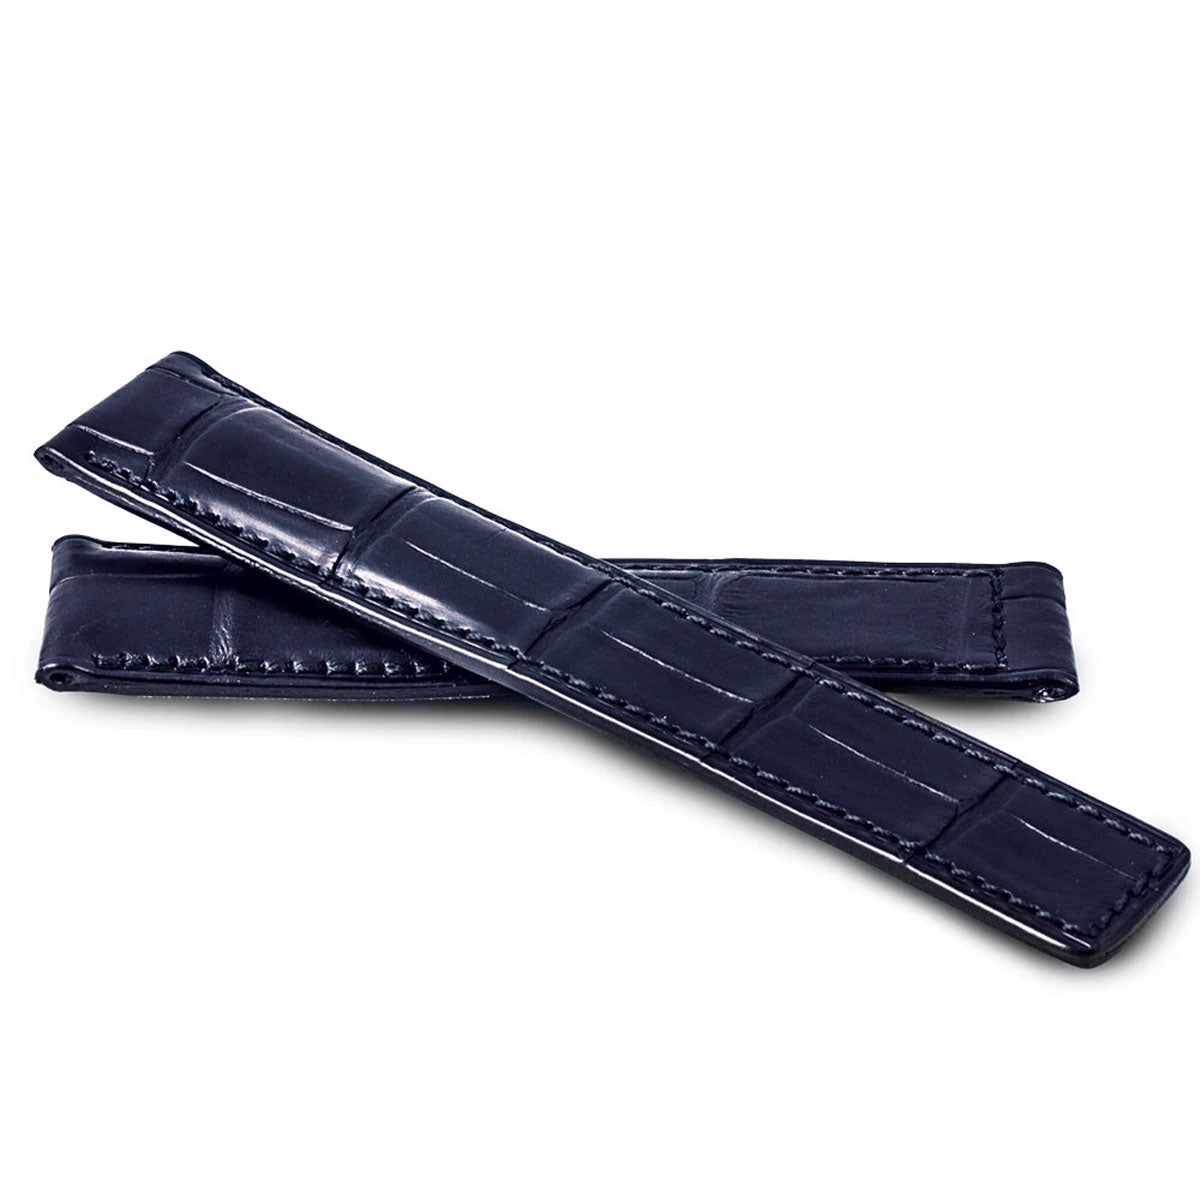 Breitling - Bracelet pour montre cuir - Alligator - watch band leather strap - ABP Concept -